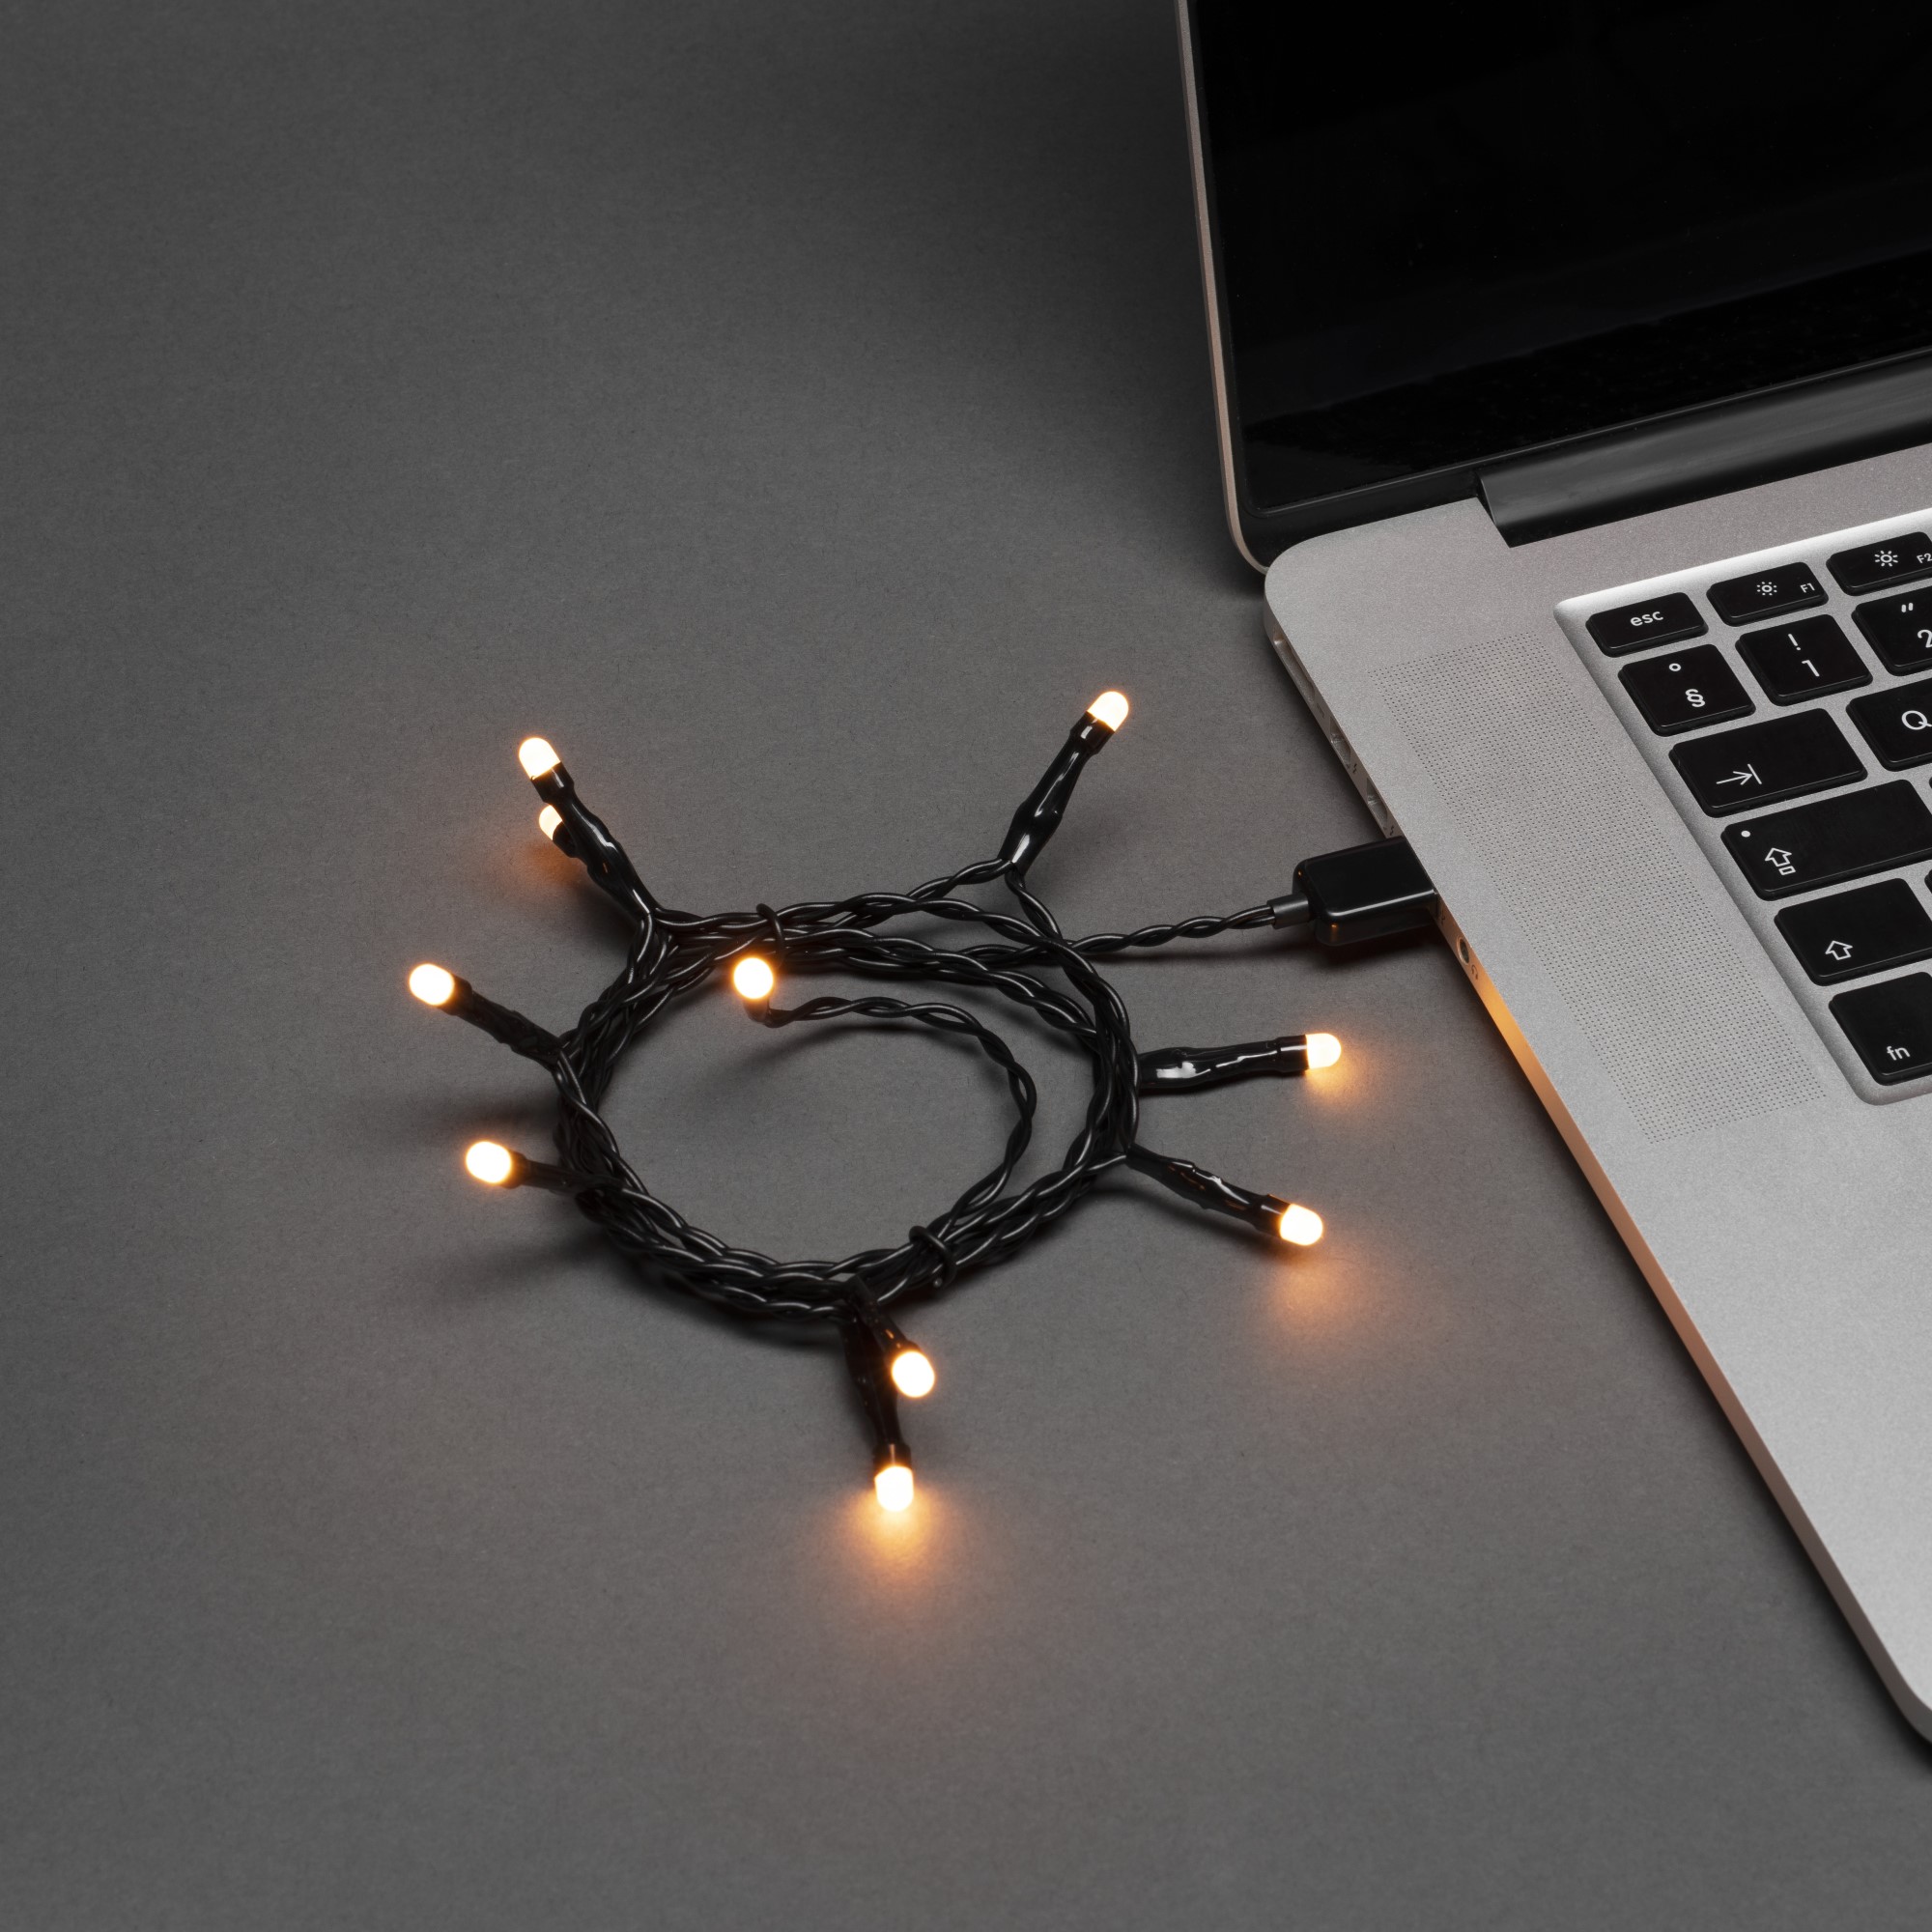 Lanț luminos cu LED-uri Konstsmide, conexiune USB, 35 LED-uri de culoare chihlimbar, 3,4m, IP20